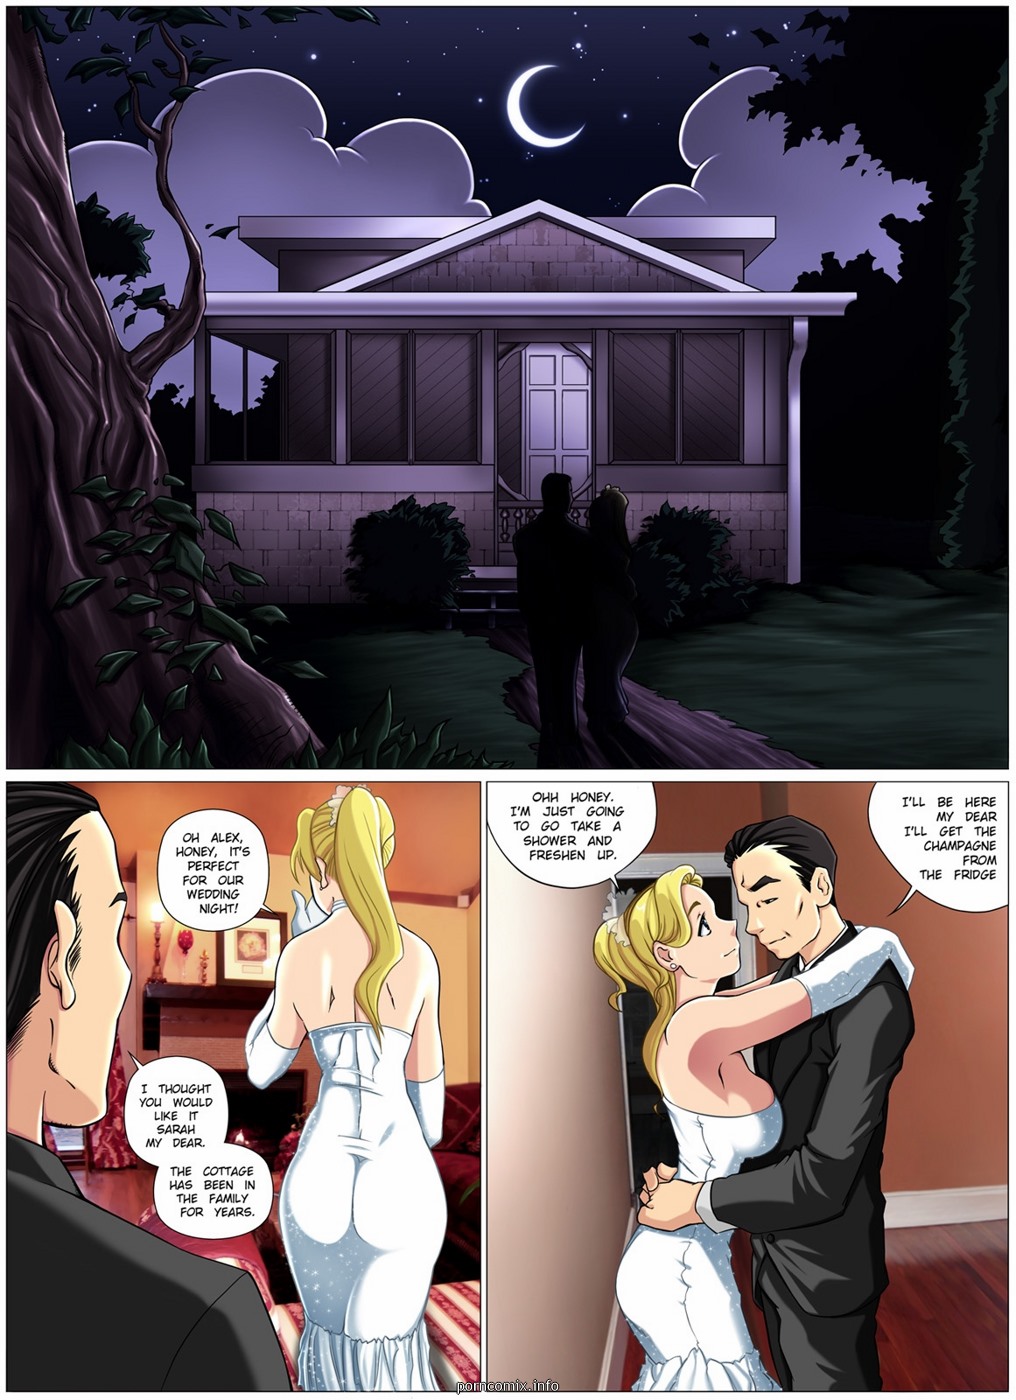 1016px x 1400px - Monster Wedding Night- Melkormancin - Porn Cartoon Comics